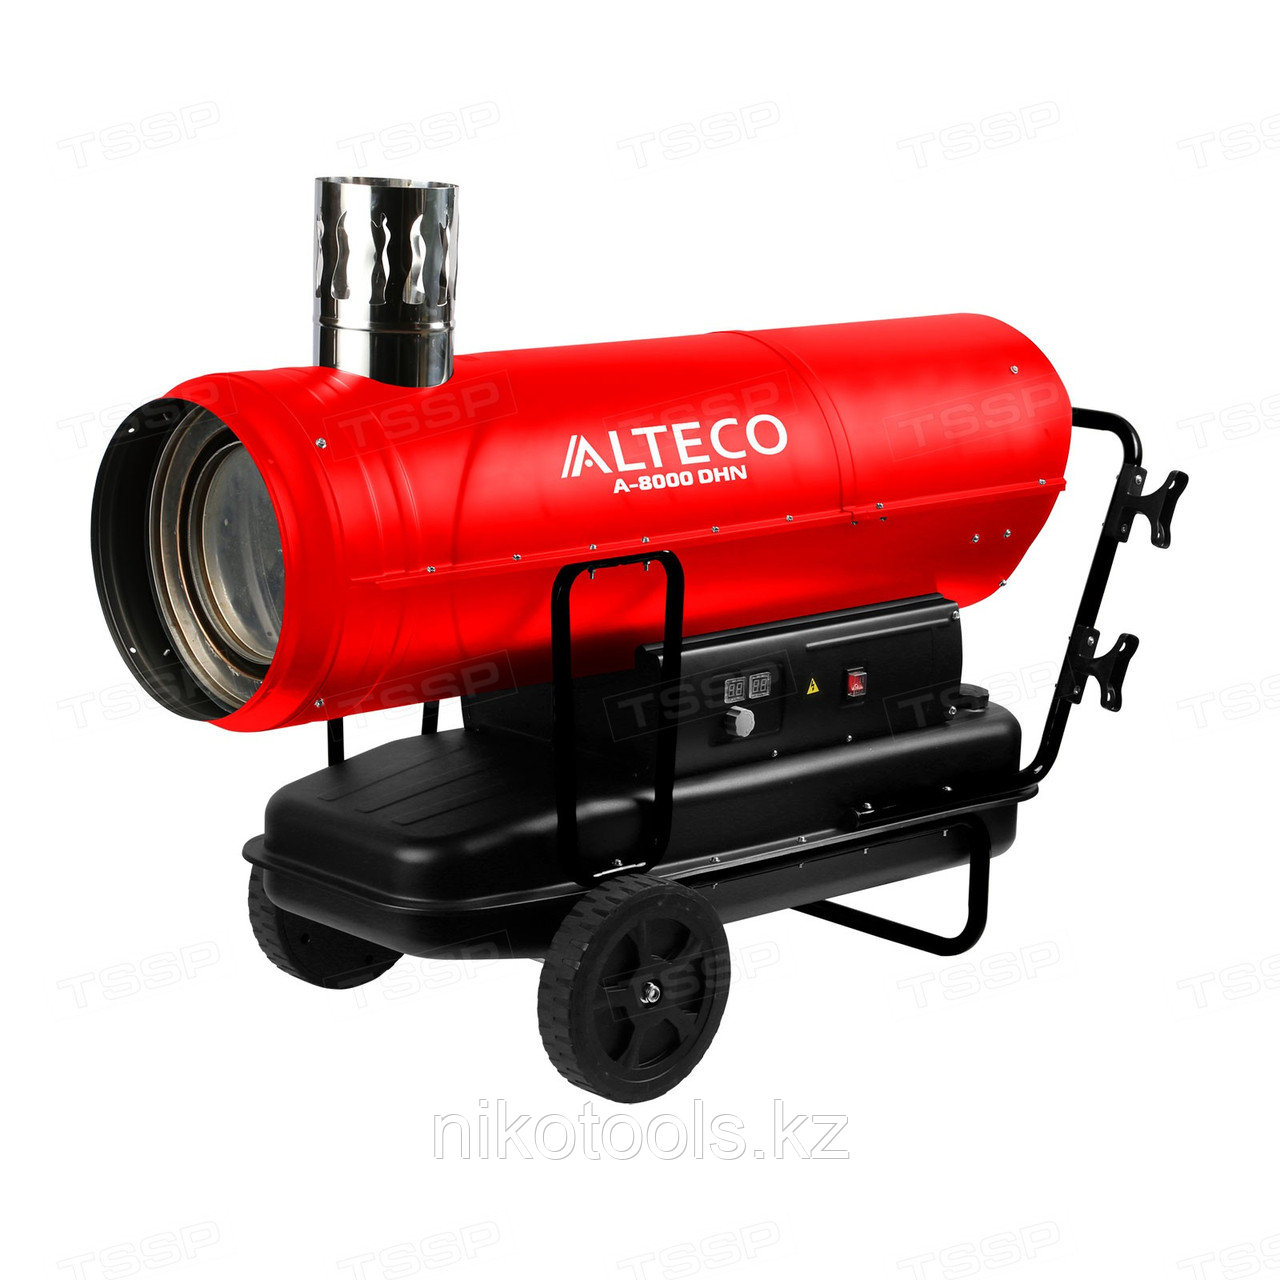 Нагреватель на жидк.топливе A-8000DHN (80 кВт) Alteco